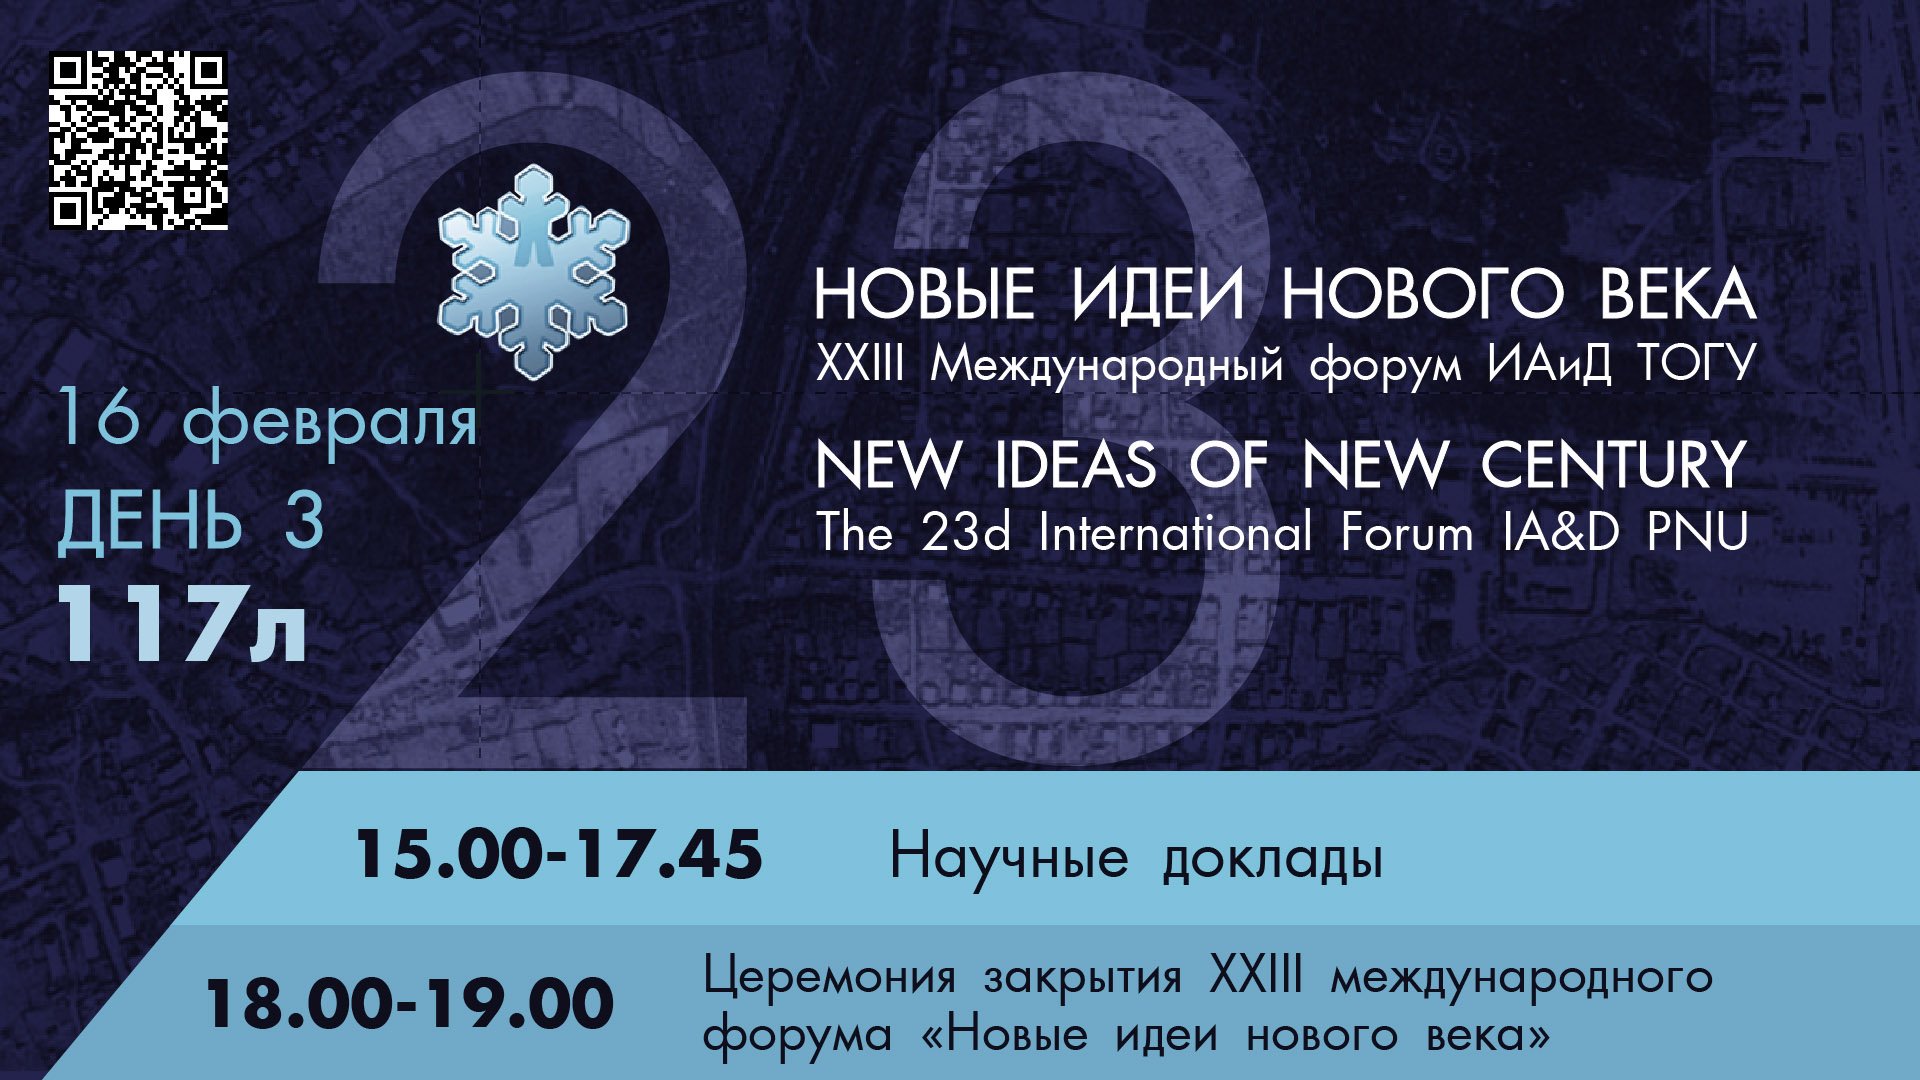 XXIII Международный форум "Новые идеи нового века" 3 день